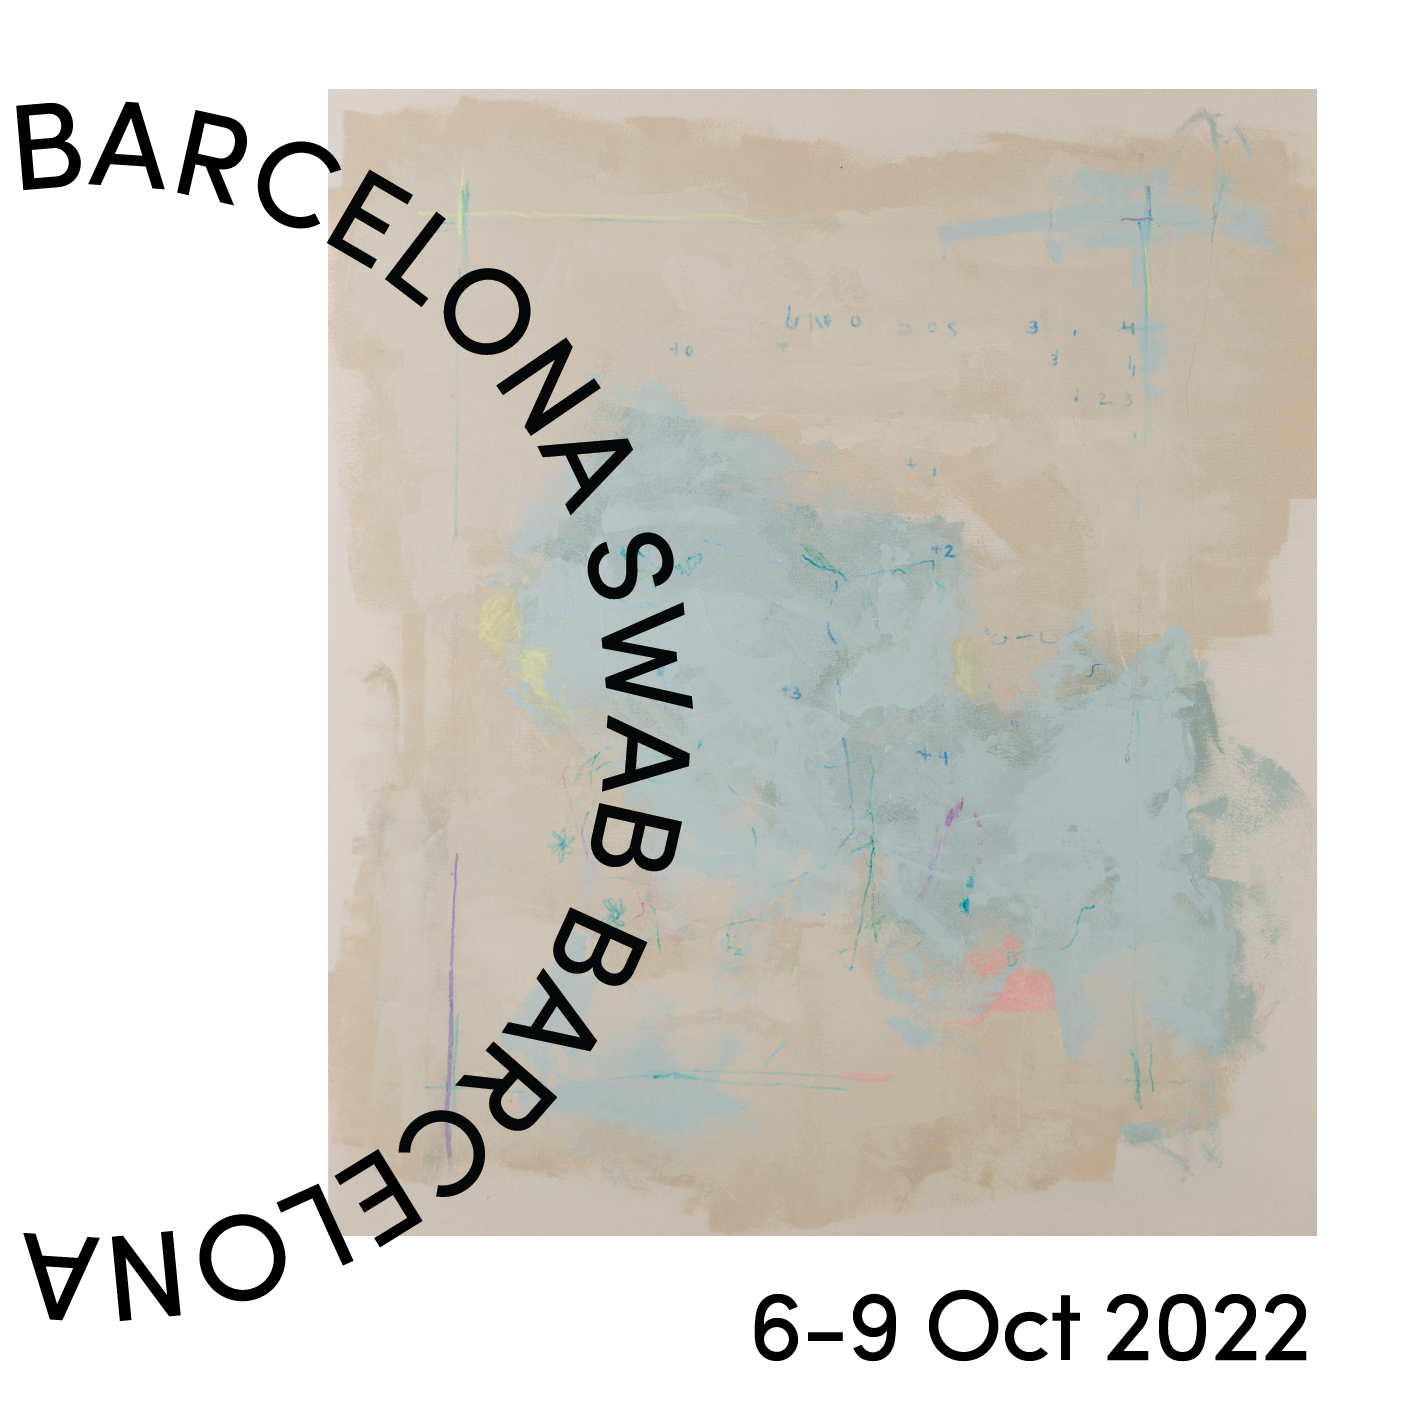 pigment 02 Pigment Gallery Galería de Arte en Barcelona Events